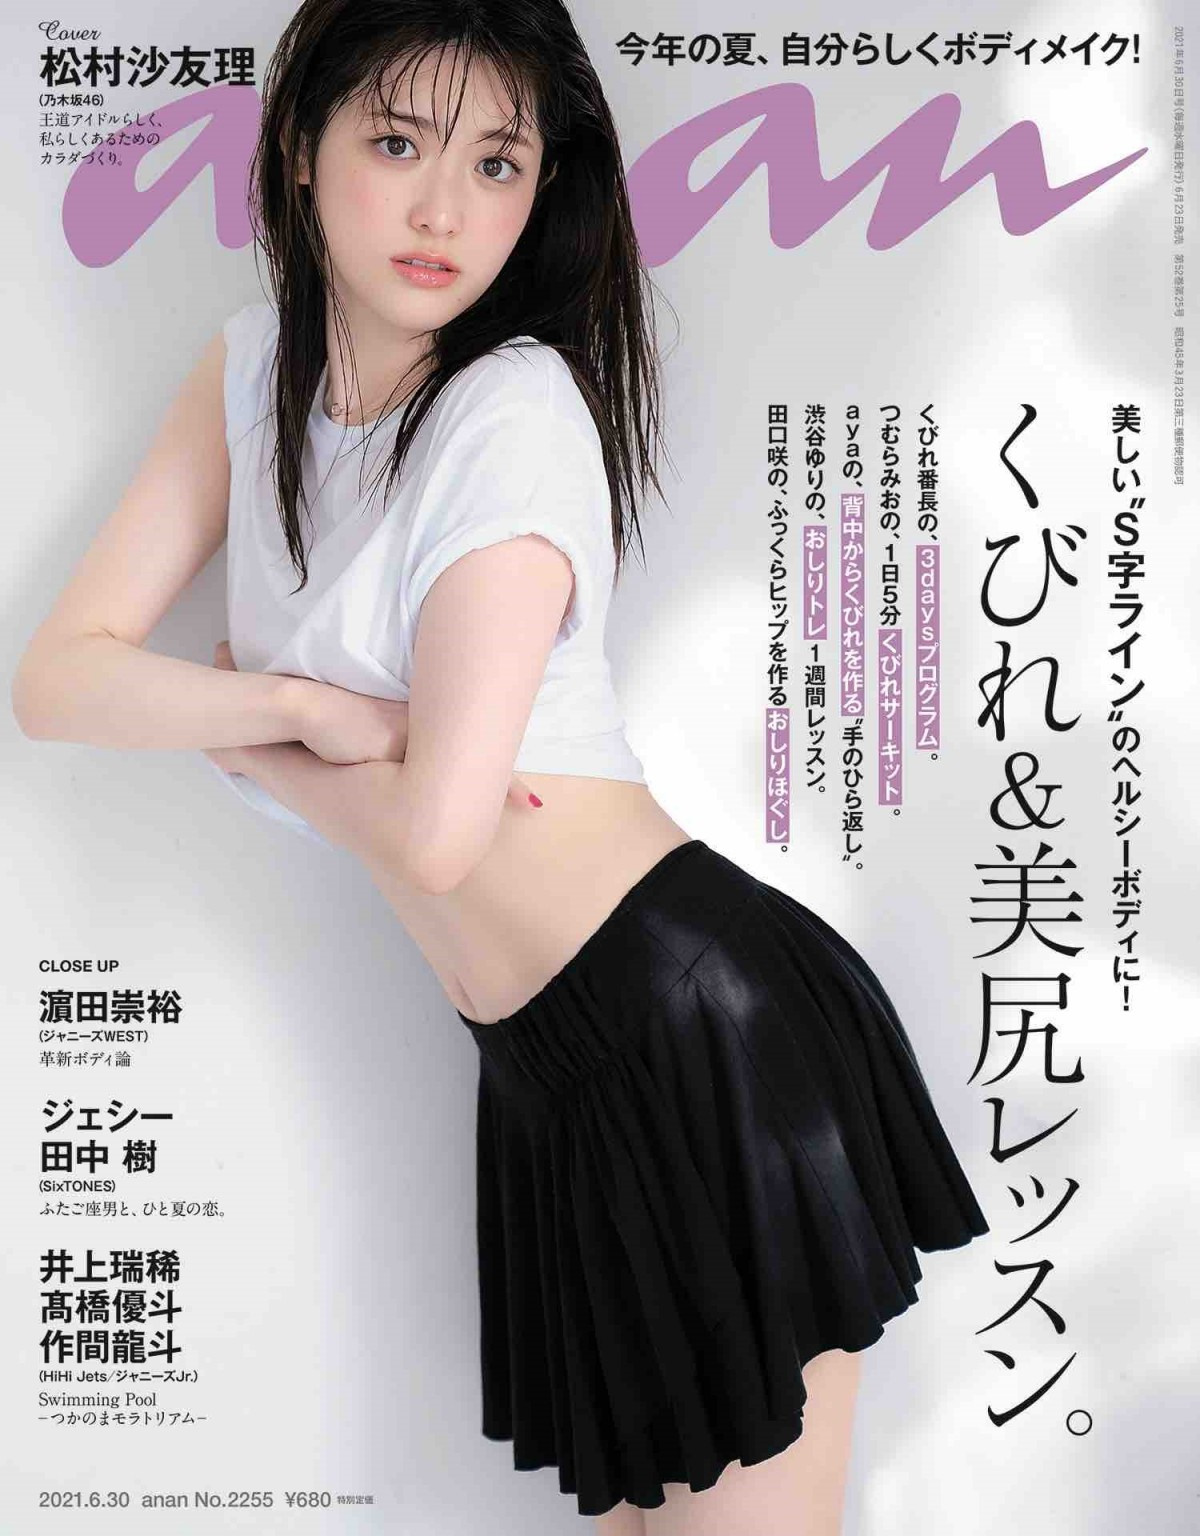 乃木坂46松村沙友理が魅せる しなやか 白肌の究極s字くびれ エモすぎる制服姿も披露 Oricon News